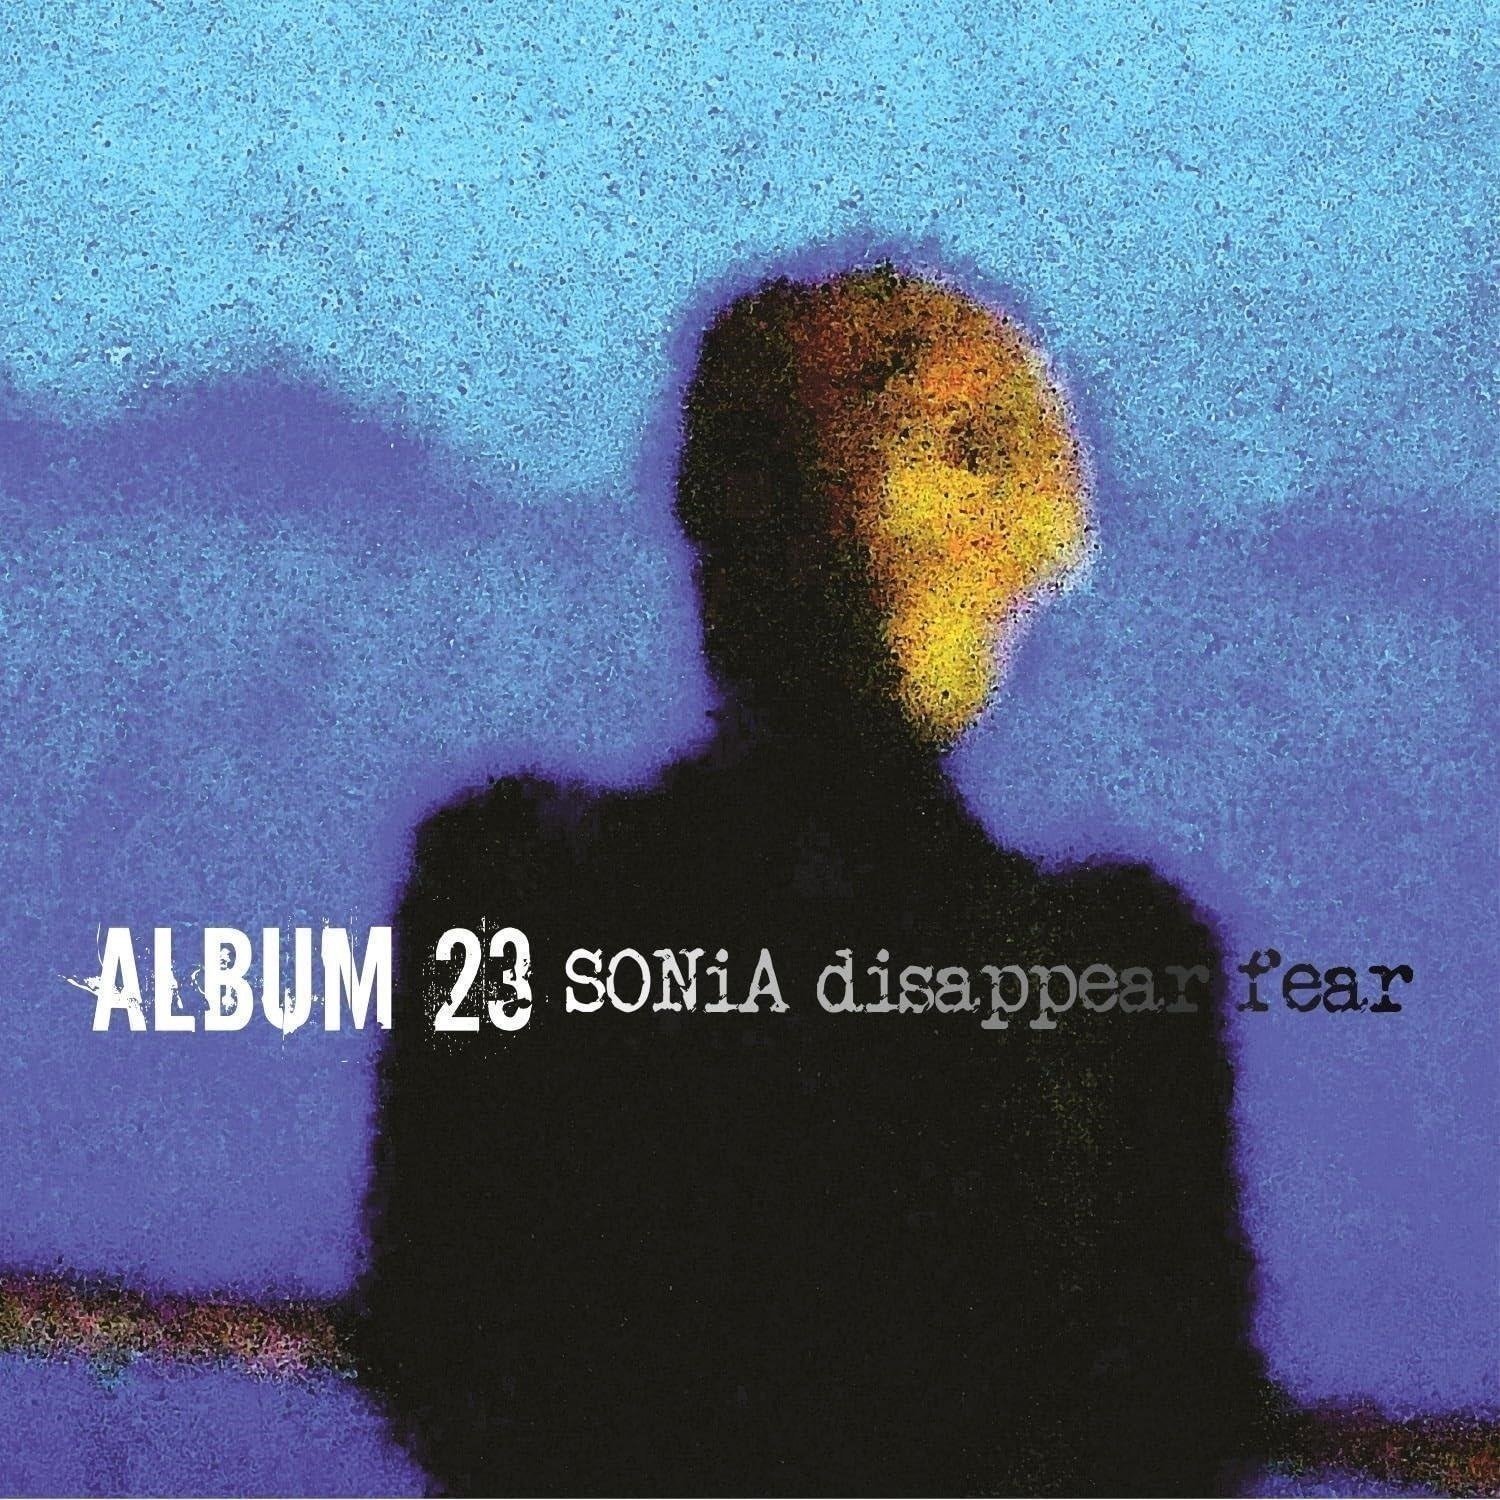 CD Shop - SONIA DISAPPEAR FEAR ALBUM 23